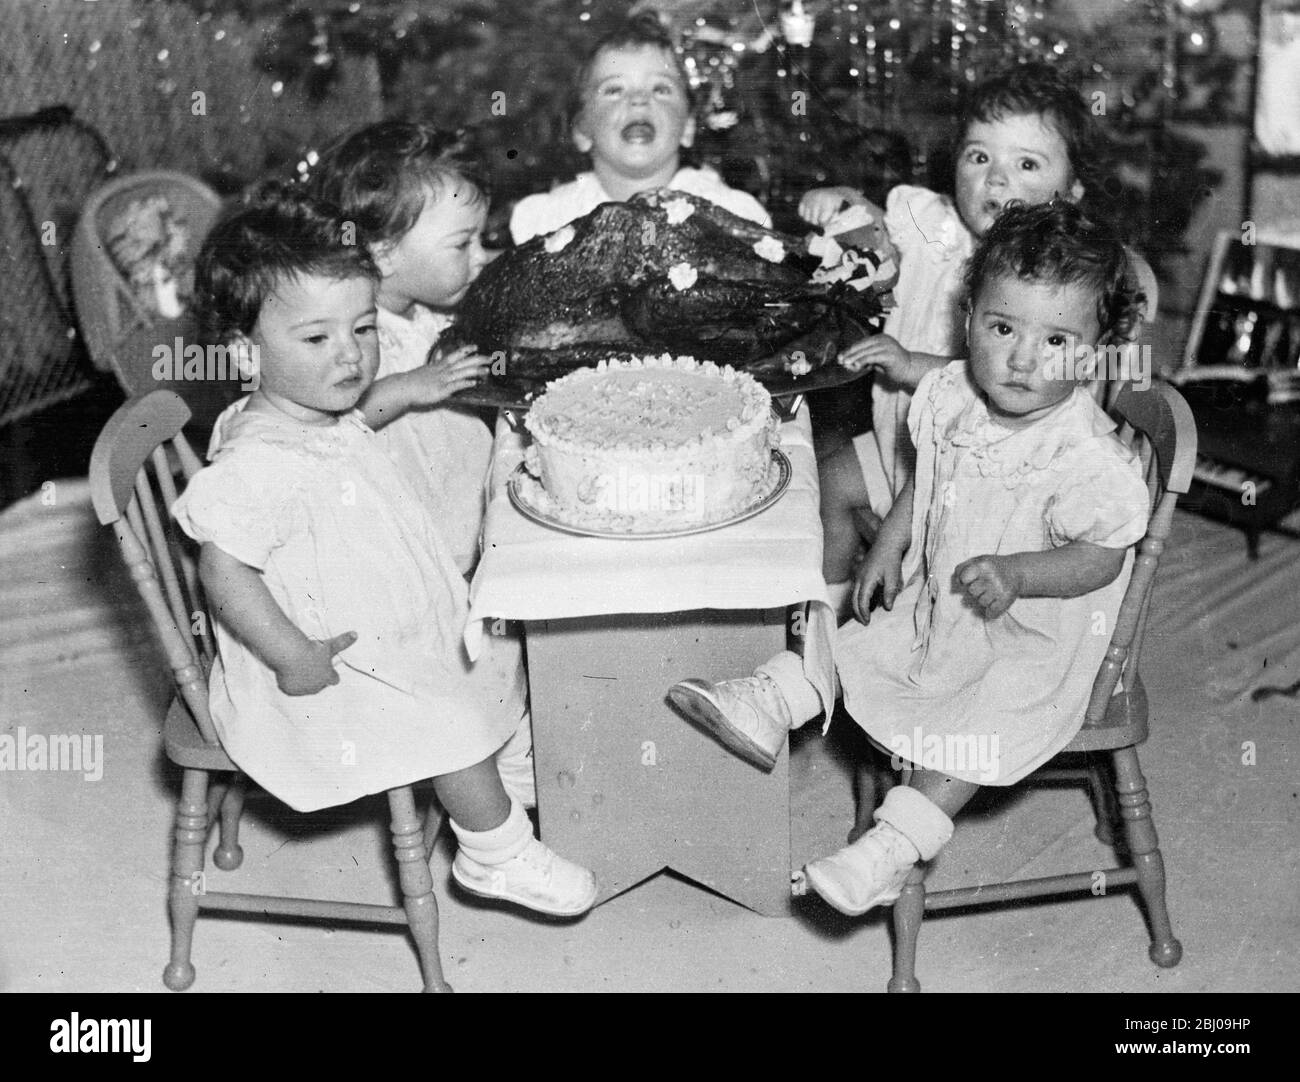 Exklusive Bilder der Dionne Quintuplets Weihnachtsfeier. - Angesichts einer riesigen türkei und einem ebenso großen Kuchen wussten die Quins nicht, wo sie anfangen sollten. Emelie, jedoch, immer die vorderste der Babys, scheint durch den Vogel versucht. - 23. Dezember 1935 Stockfoto